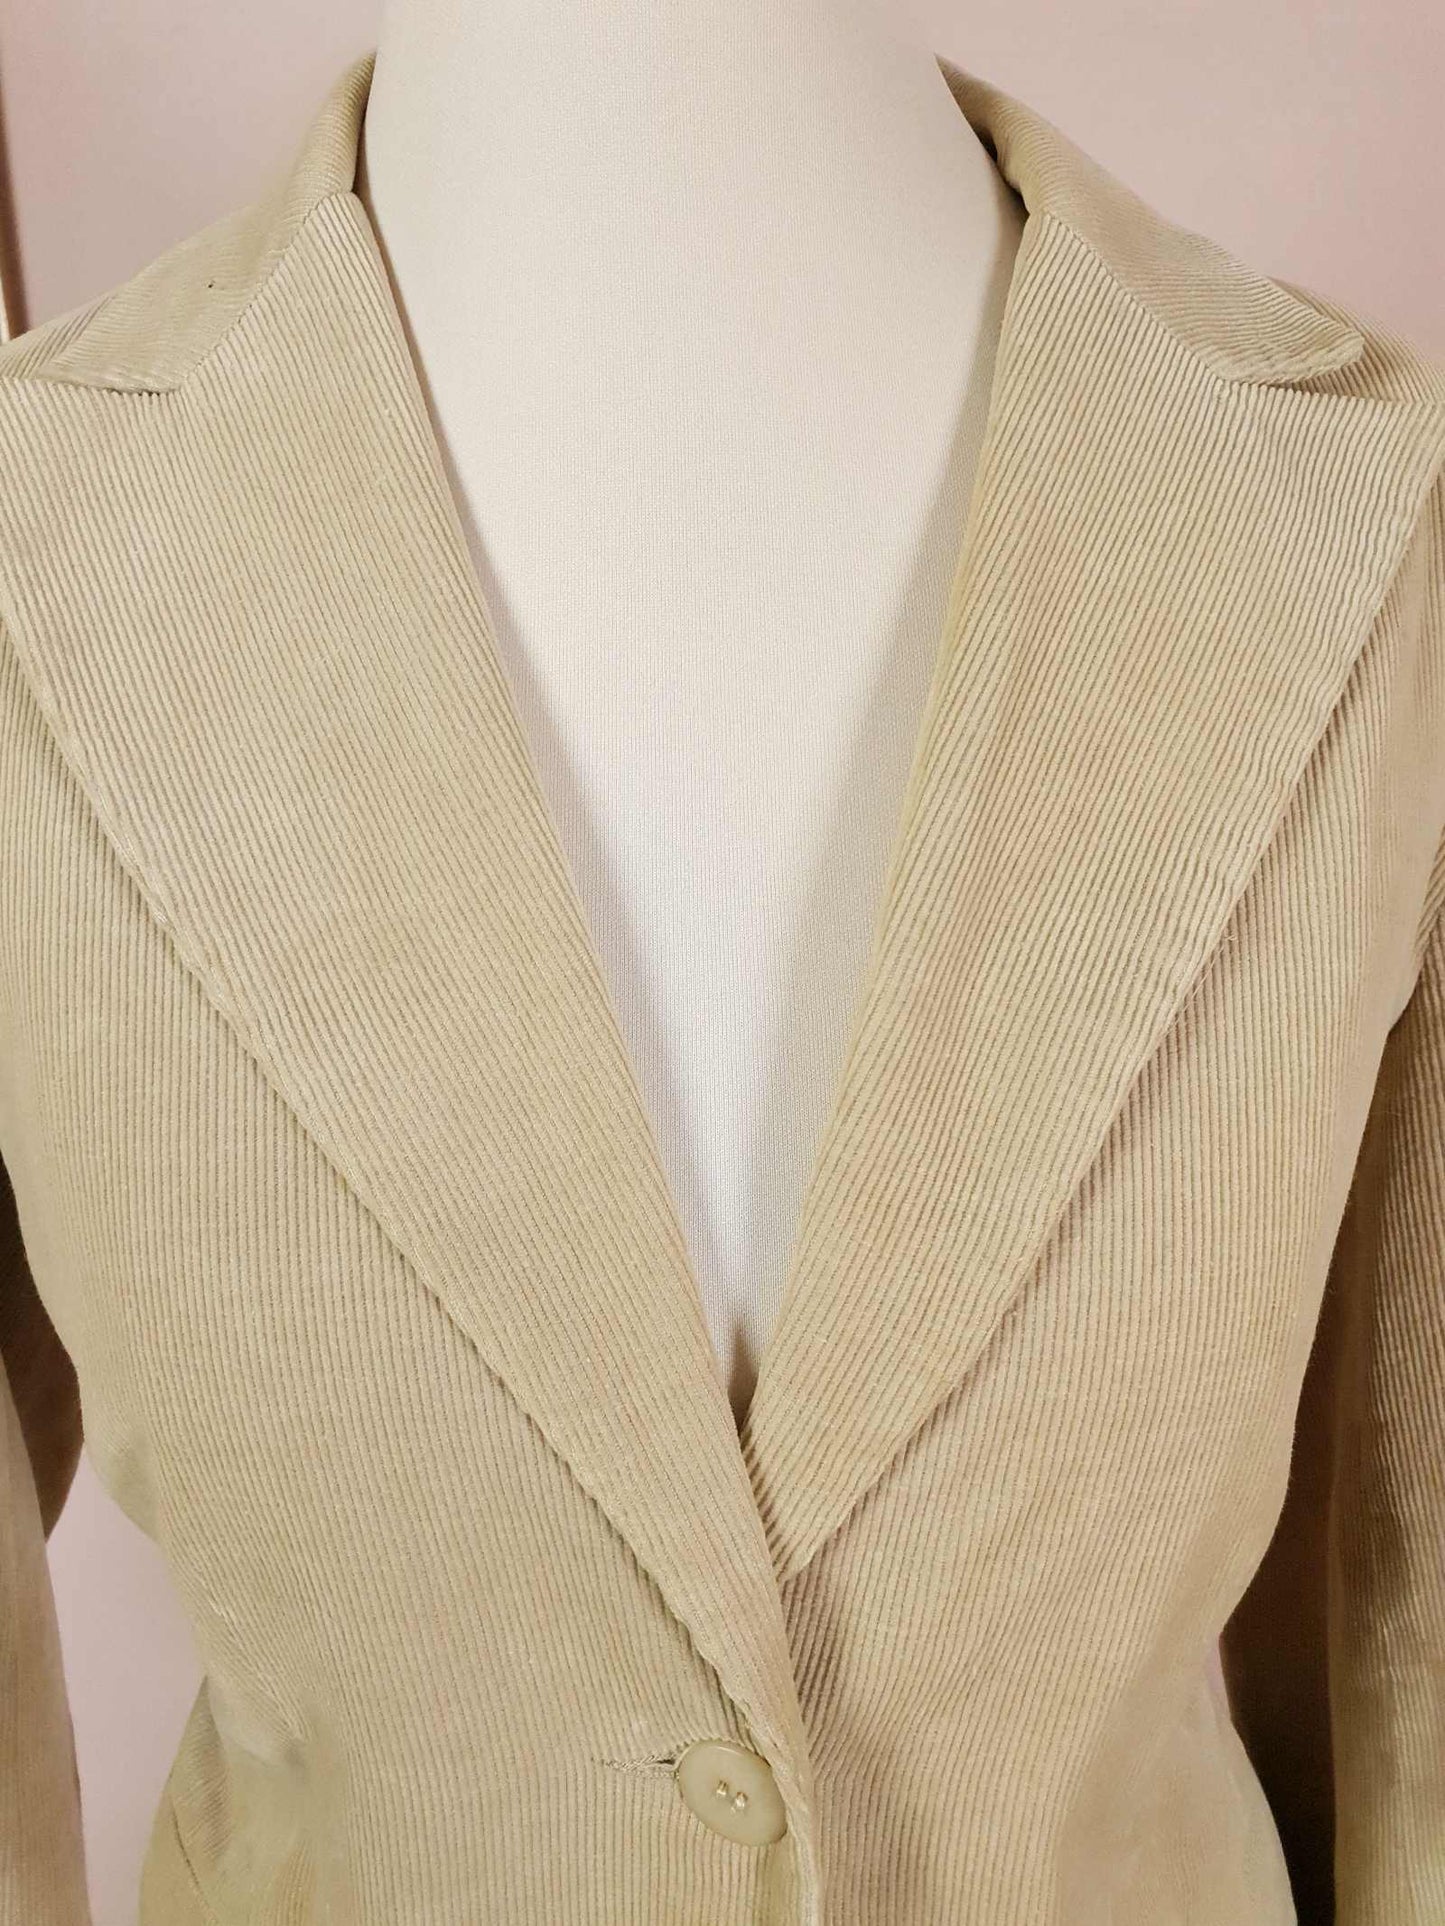 Vintage 90s Tan Corduroy Ladies Jacket Blazer Retro Cord Size 12/14 Women's